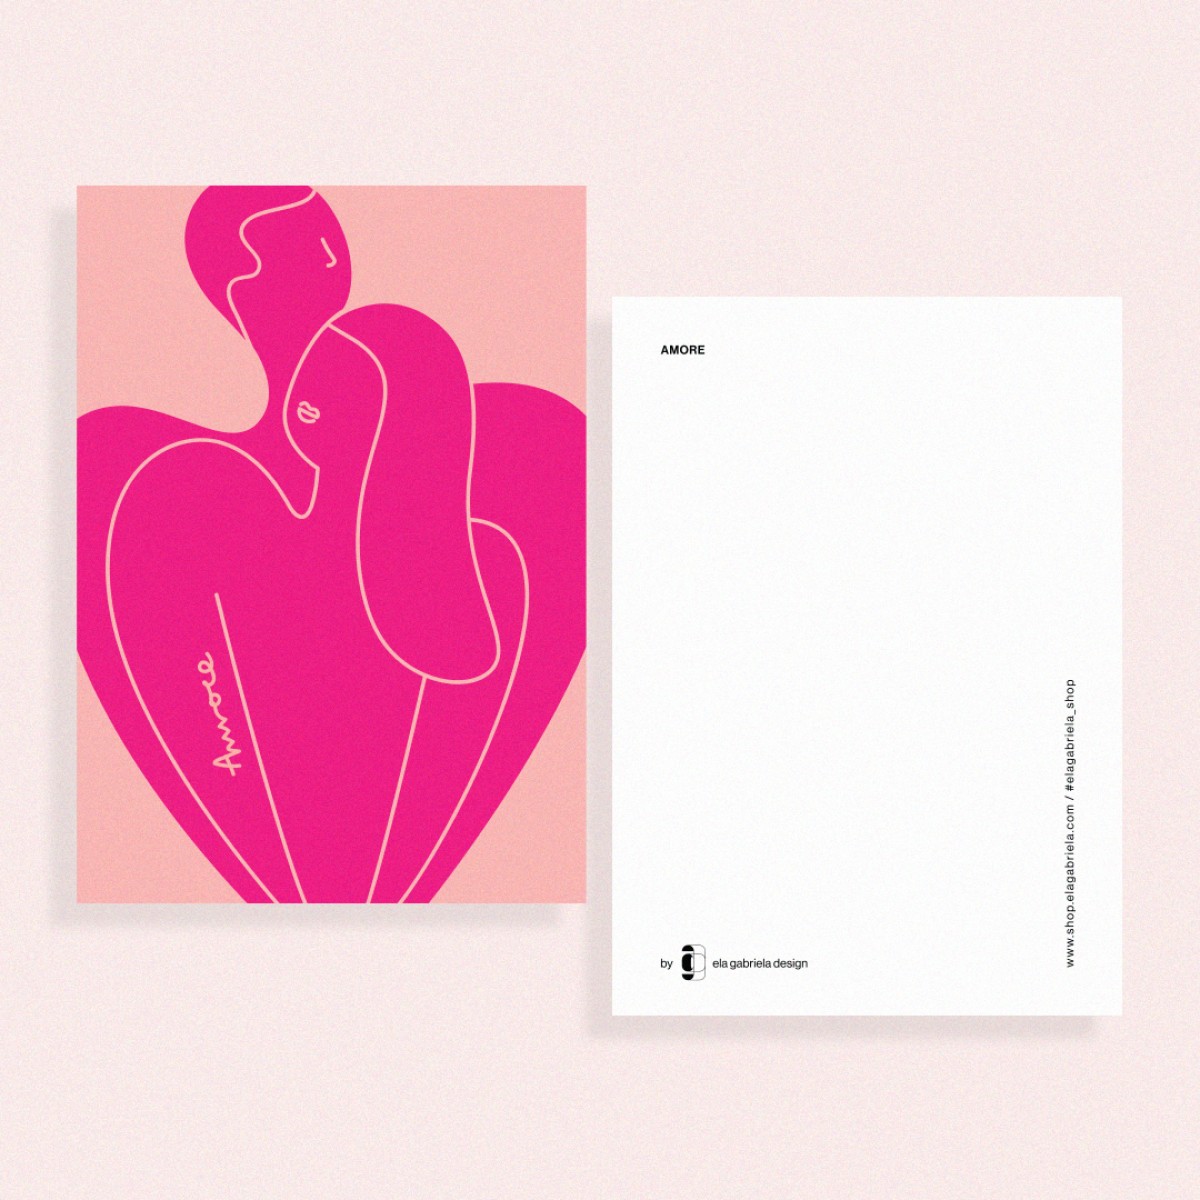 ela gabriela design "Amore" – Postkarte